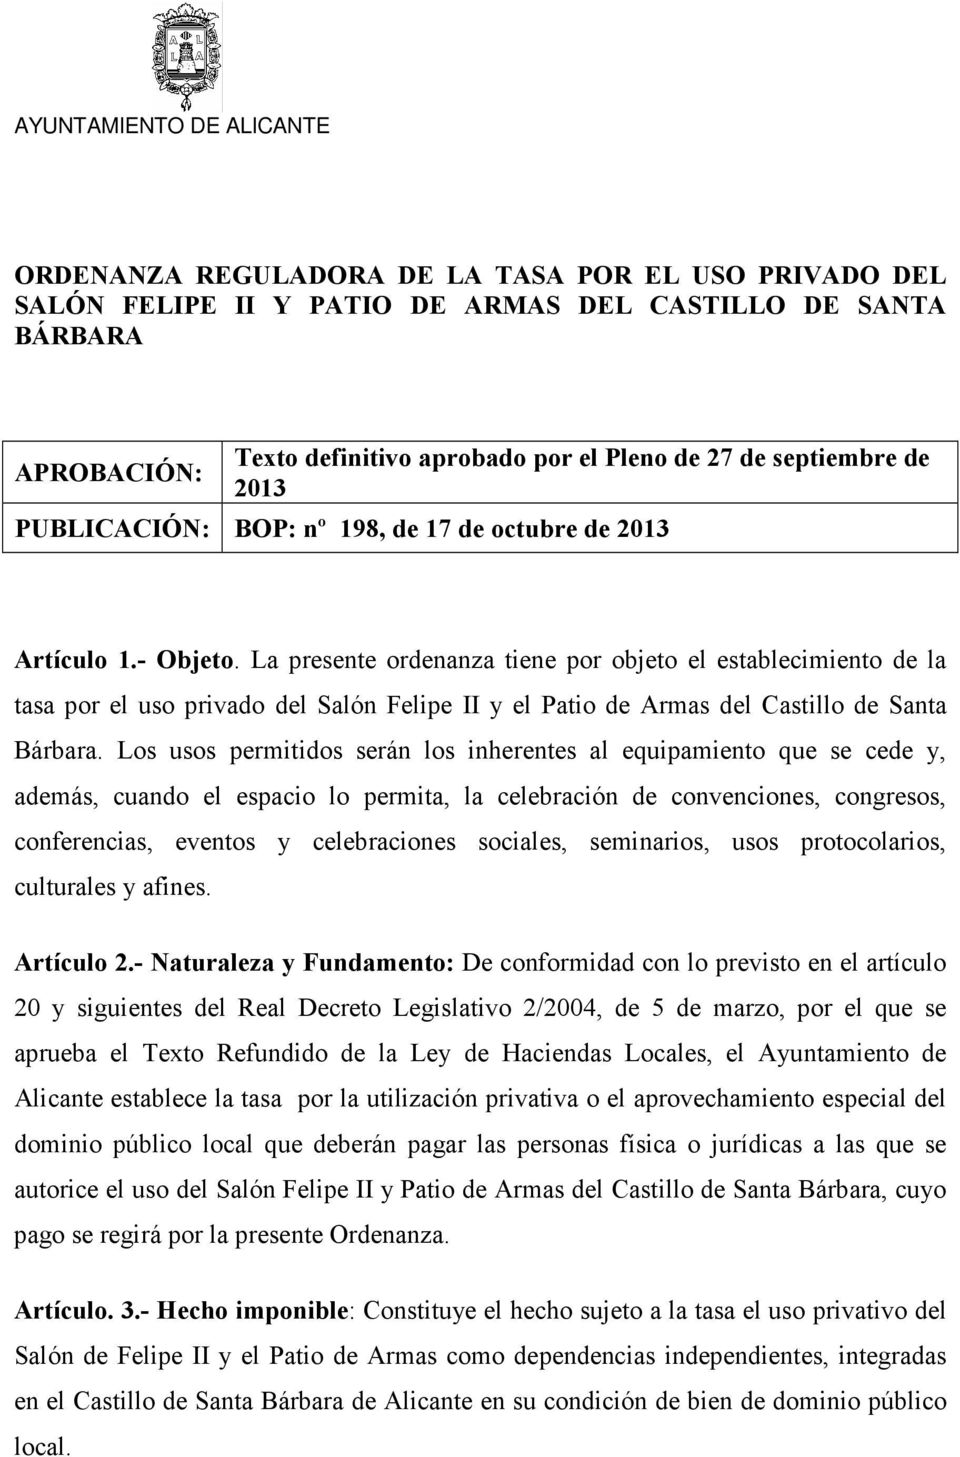 La presente ordenanza tiene por objeto el establecimiento de la tasa por el uso privado del Salón Felipe II y el Patio de Armas del Castillo de Santa Bárbara.